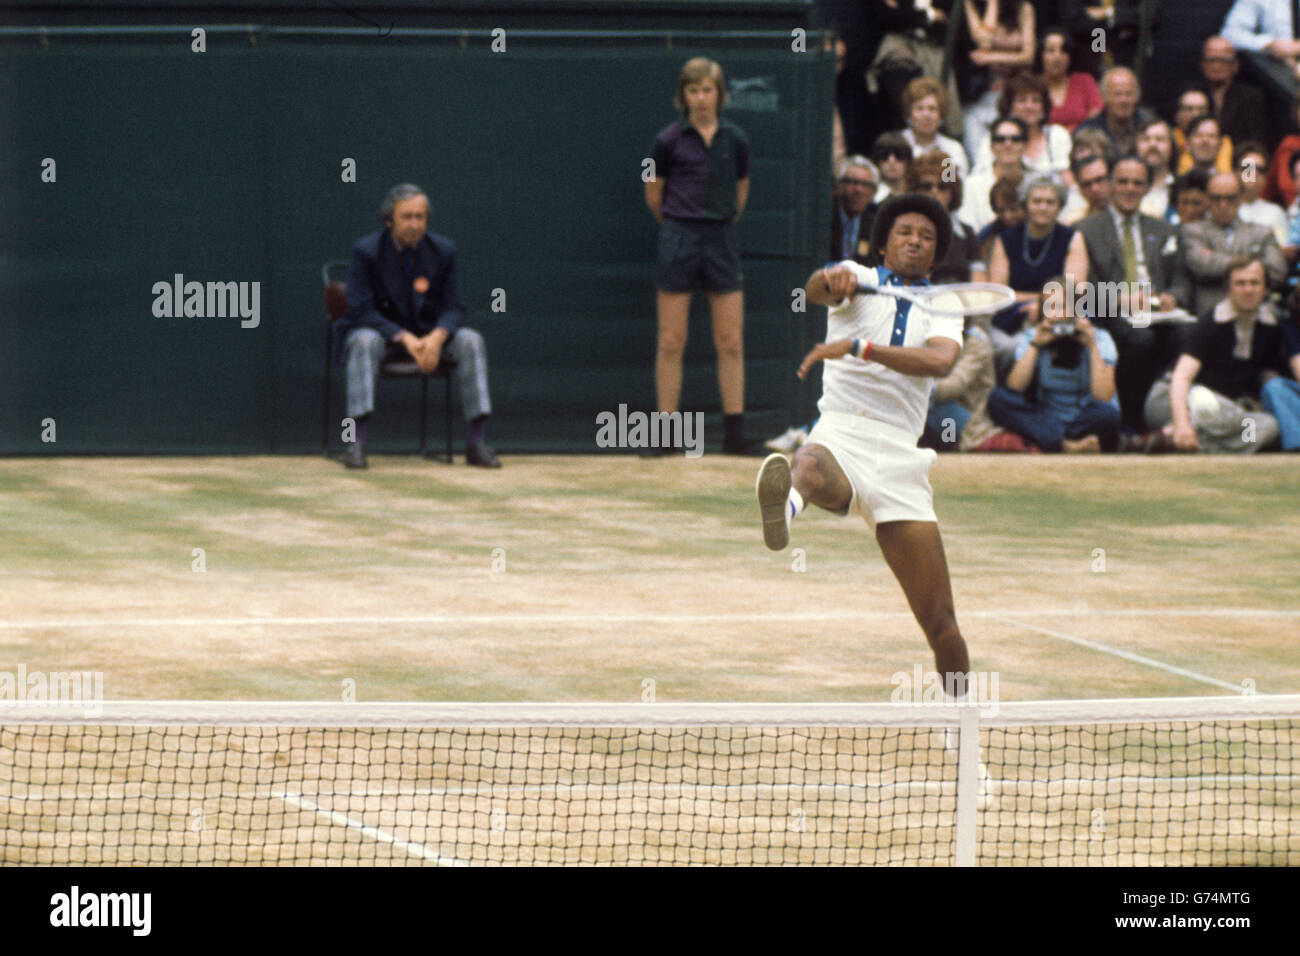 Tennis - Wimbledon - Men's Singles Final - Jimmy Connors contro Arthur Ashe - Centre Court. Arthur Ashe in azione sul Centre Court. Foto Stock